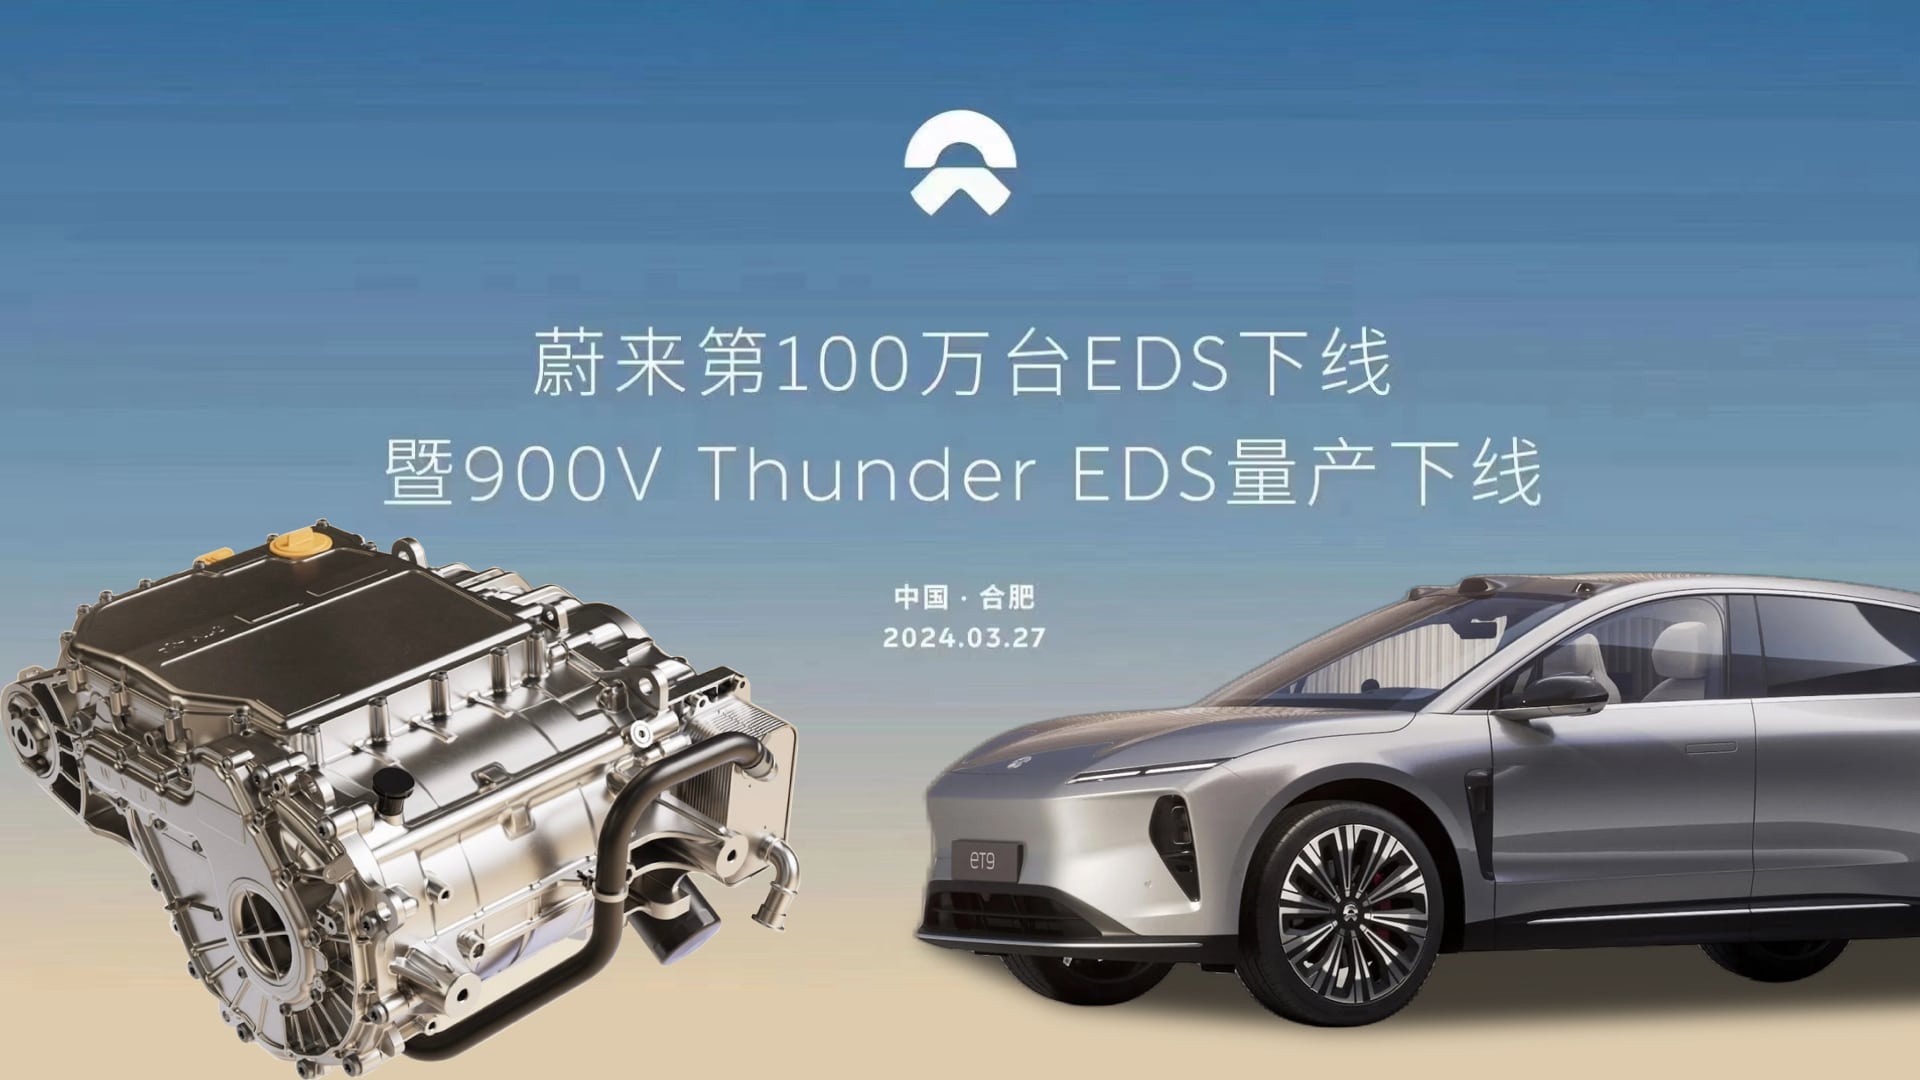 Сегодня с конвейера сошел первый серийный 900-вольтовый Thunder EDS. Как уже упоминалось, первым автомобилем, получившим такую трансмиссию, стал Nio ET9. На китайский рынок он выйдет в 2025 году.